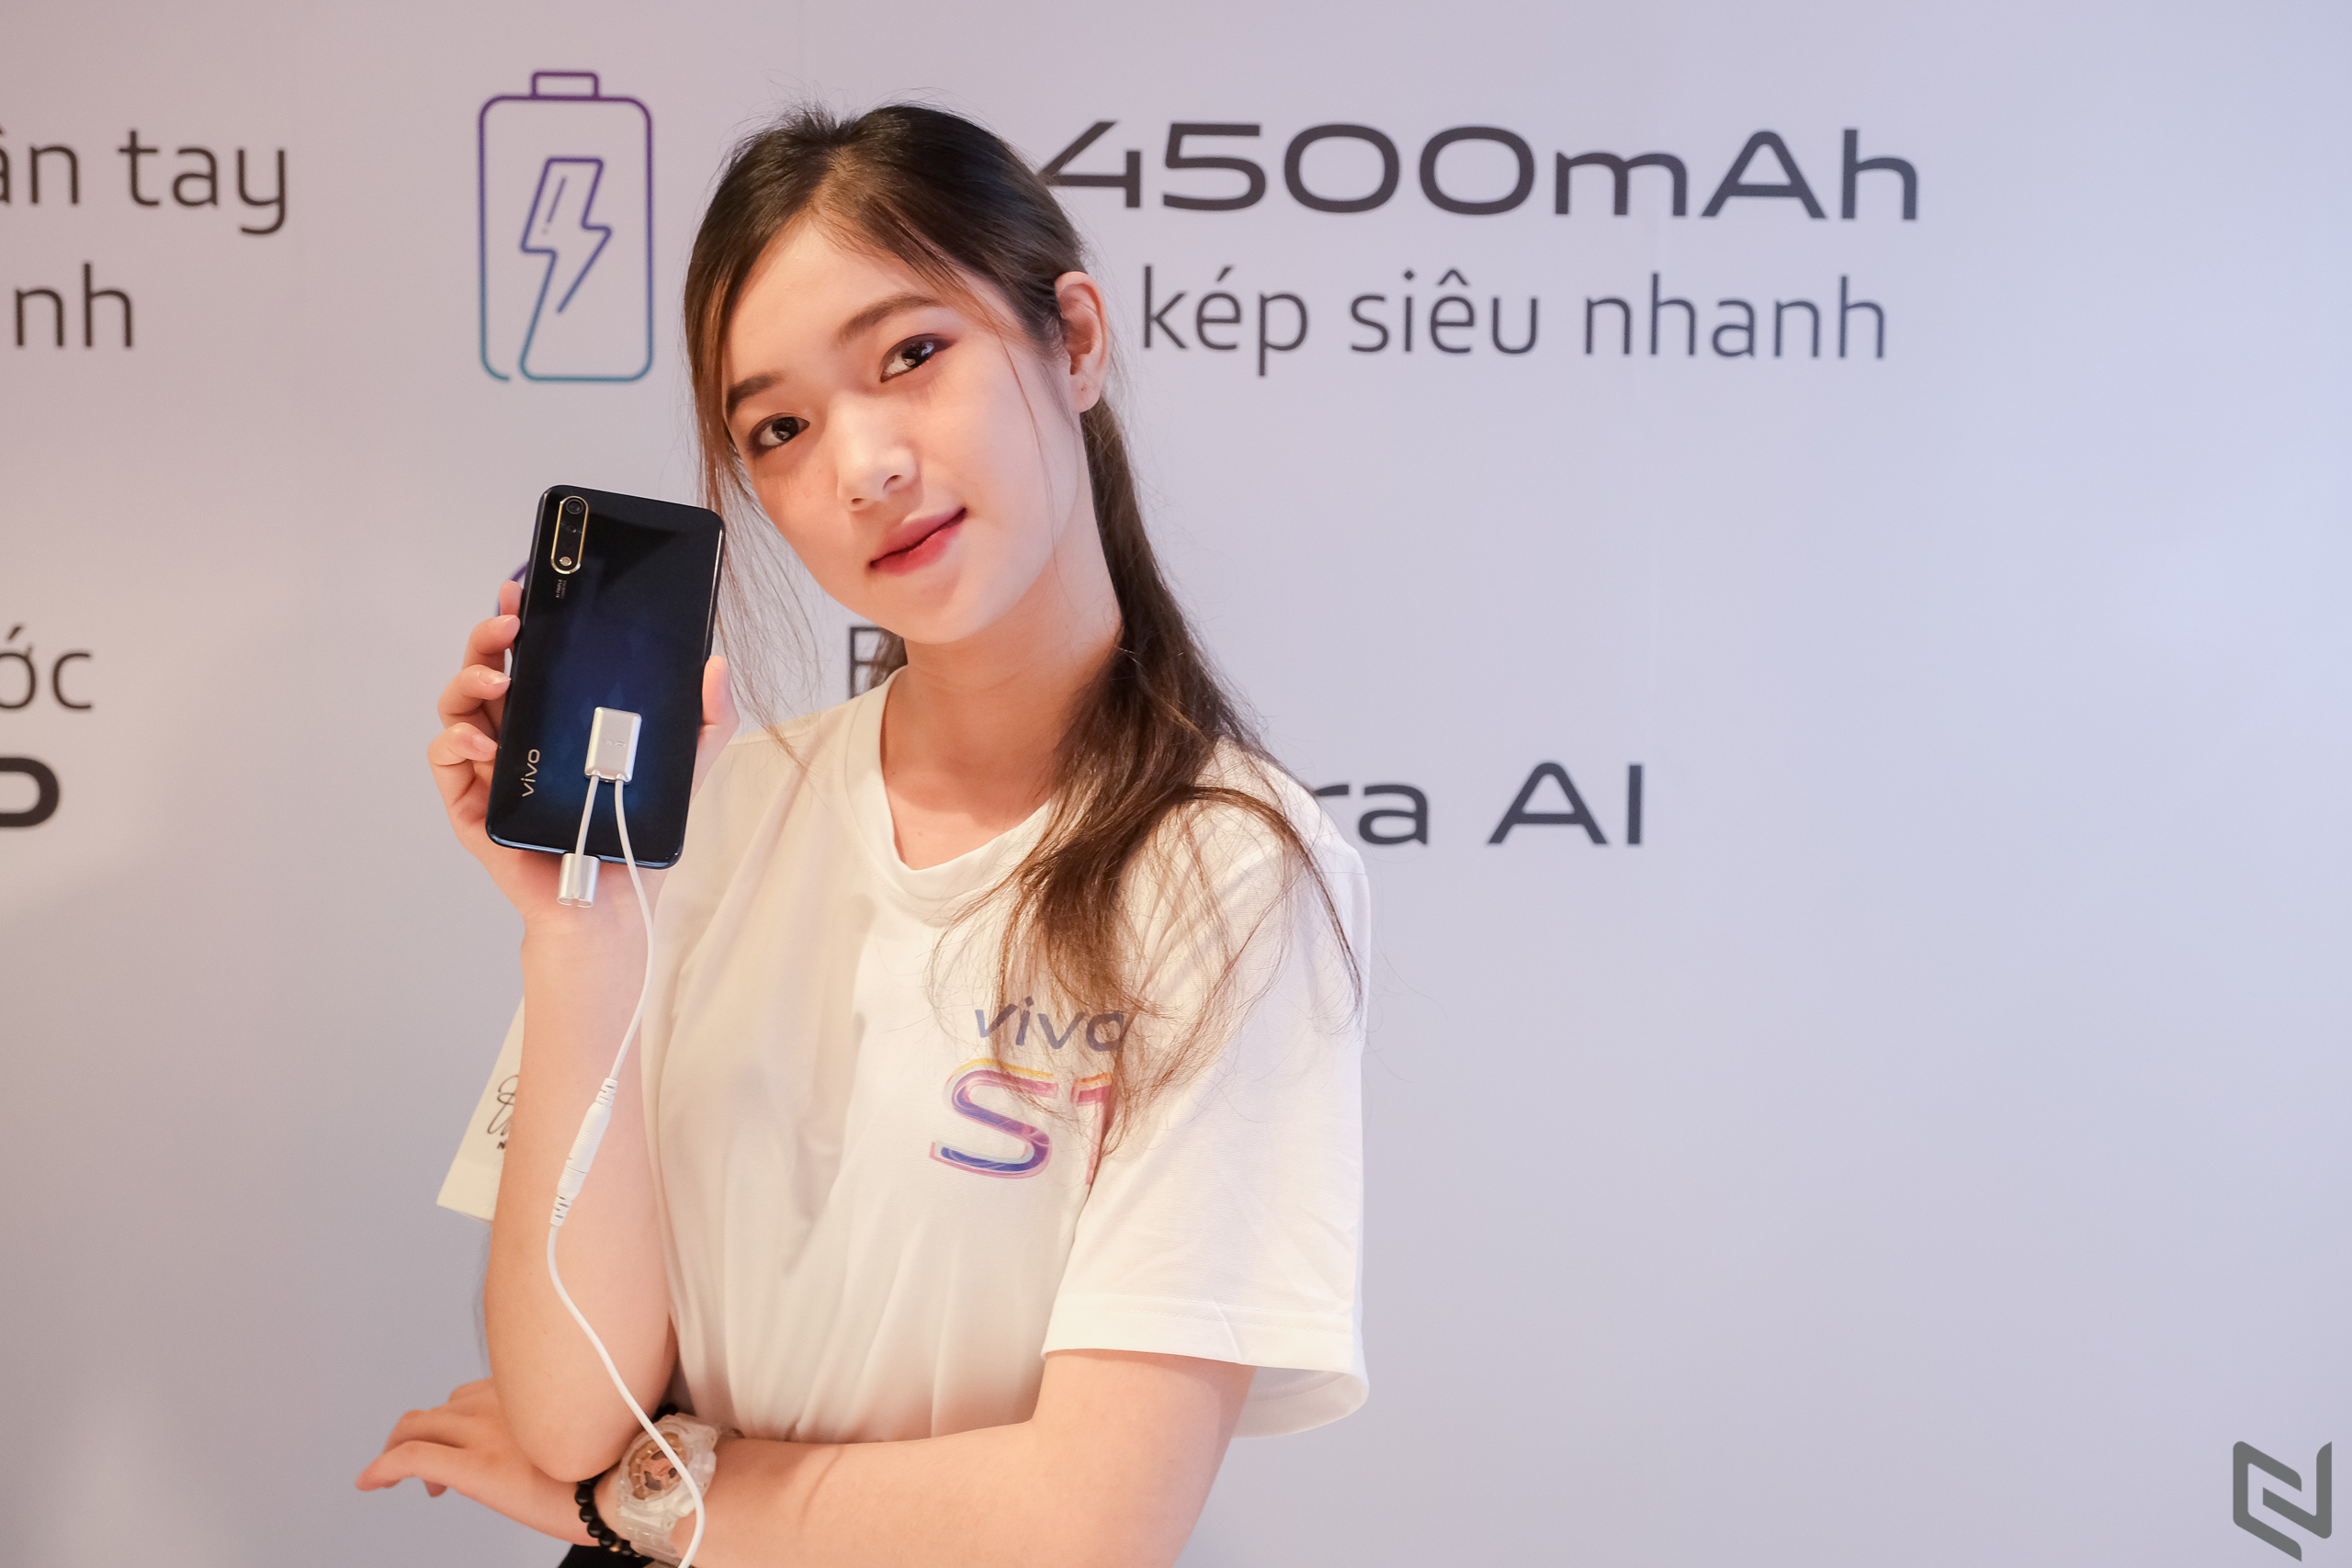 Tuần này có gì: vivo S1, Xiaomi Mi A3 ra mắt thị trường Việt, sức mạnh của Sony A7R IV, Apple bội thu Q3/2019